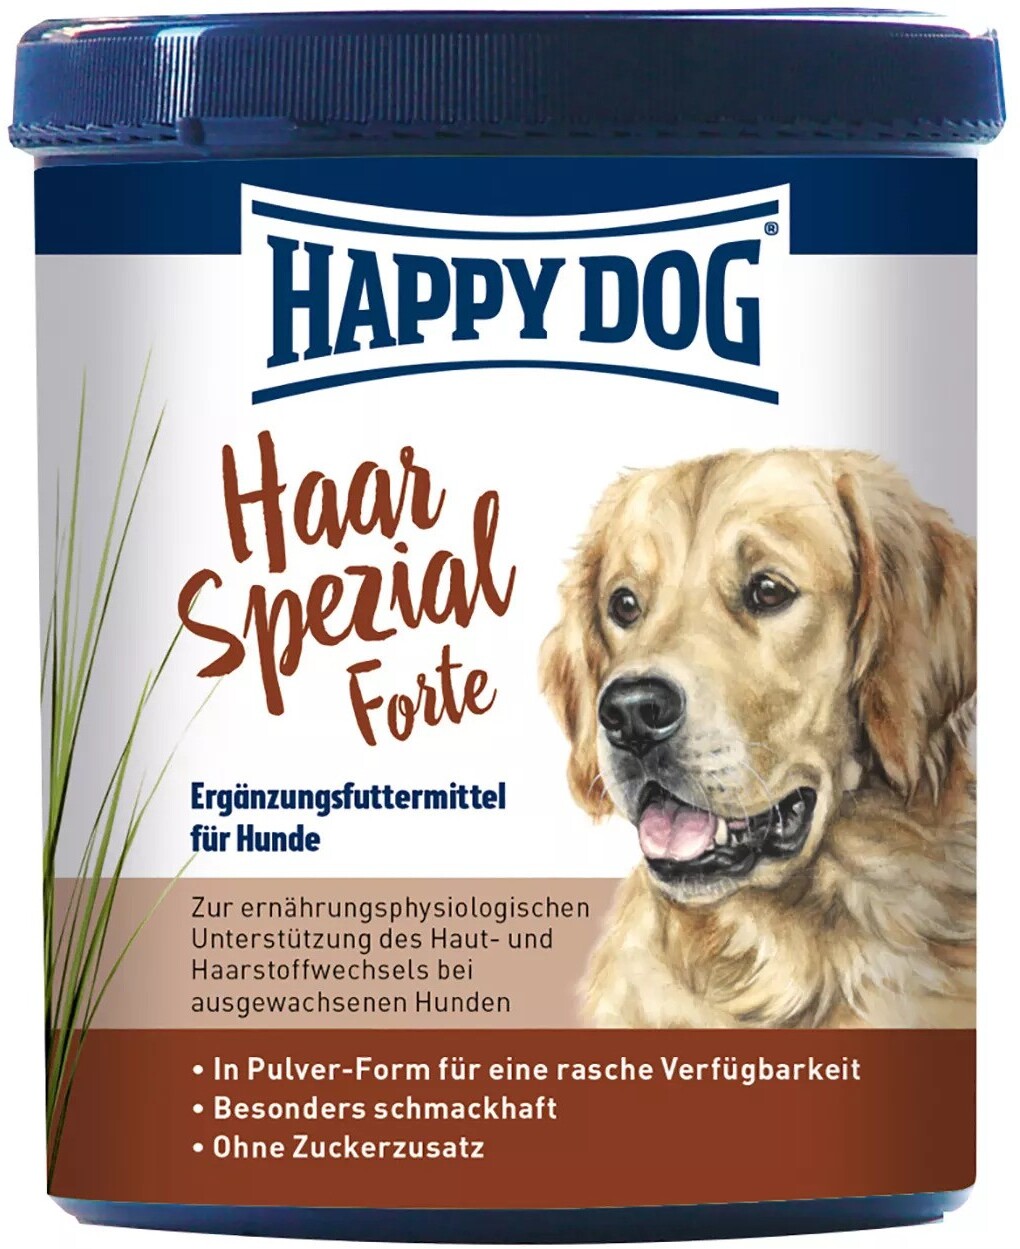 Happy Dog HaarSpezial Forte pentru o blană sănătoasă